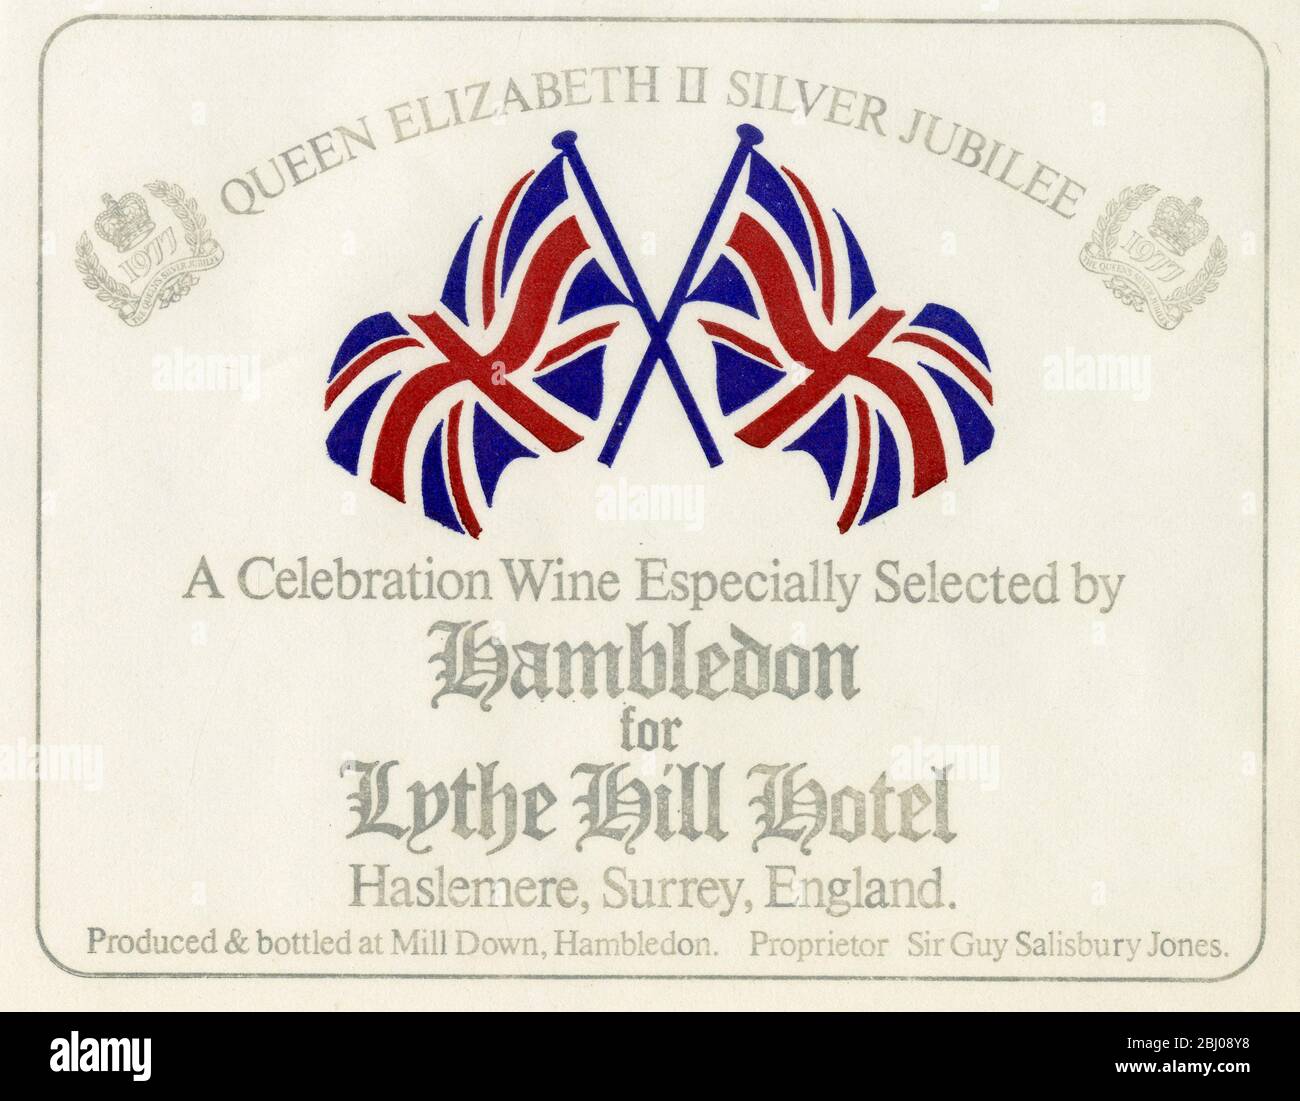 Label de vin - Hambledon Wine. - UN vin de célébration spécialement choisi par Hambledon pour le Lythe Hill Hotel pour le Jubilé d'argent de la Reine Elizabeth II. Produit et mis en bouteille par Sir Guy et Lady Salisbury - Jones dans un vignoble de Hambledon, dans le Hampshire. - 1977 Banque D'Images